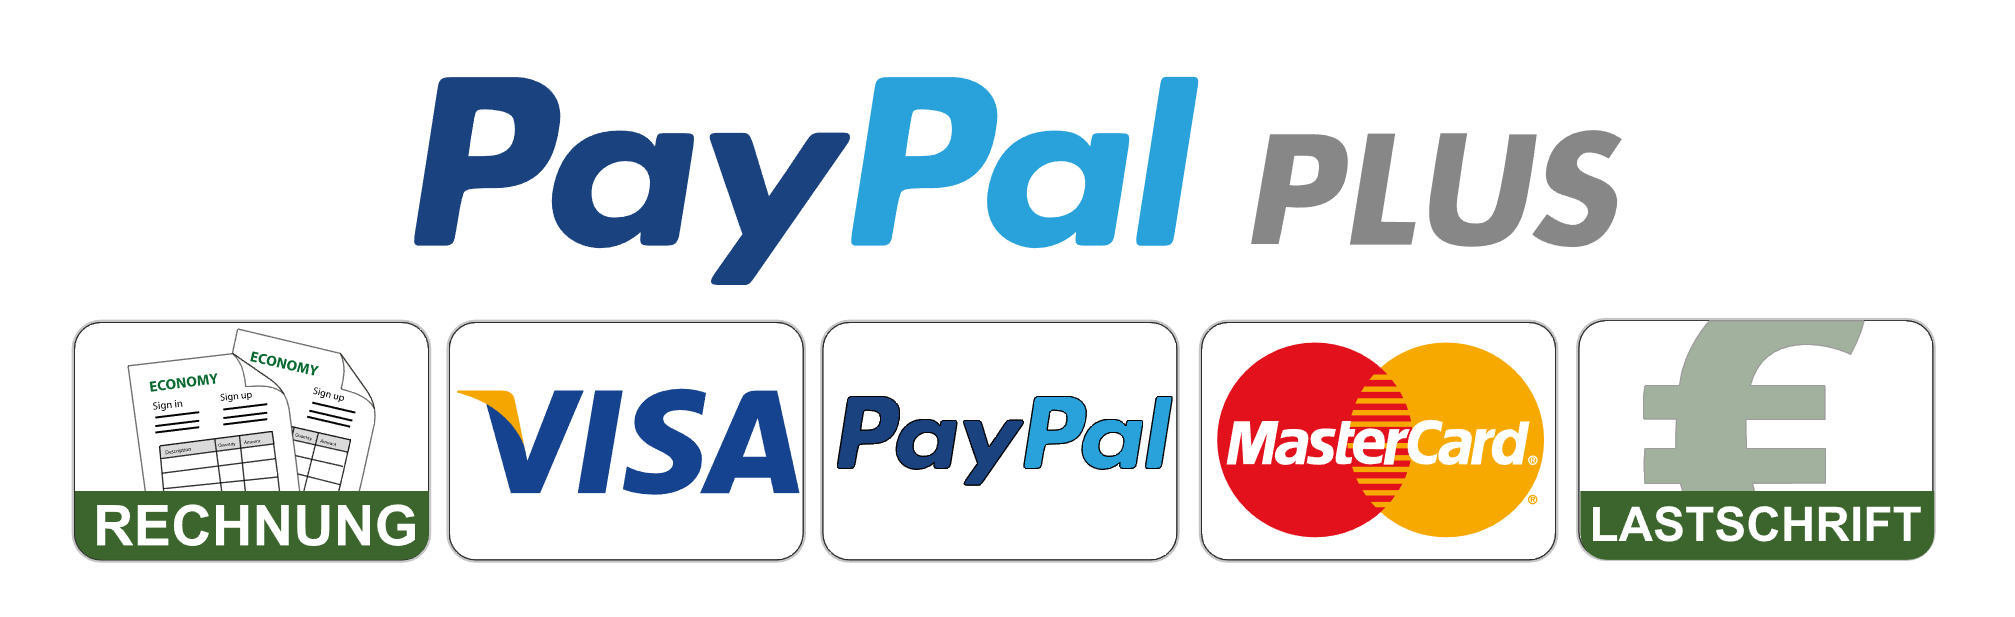 PayPal Plus Logo